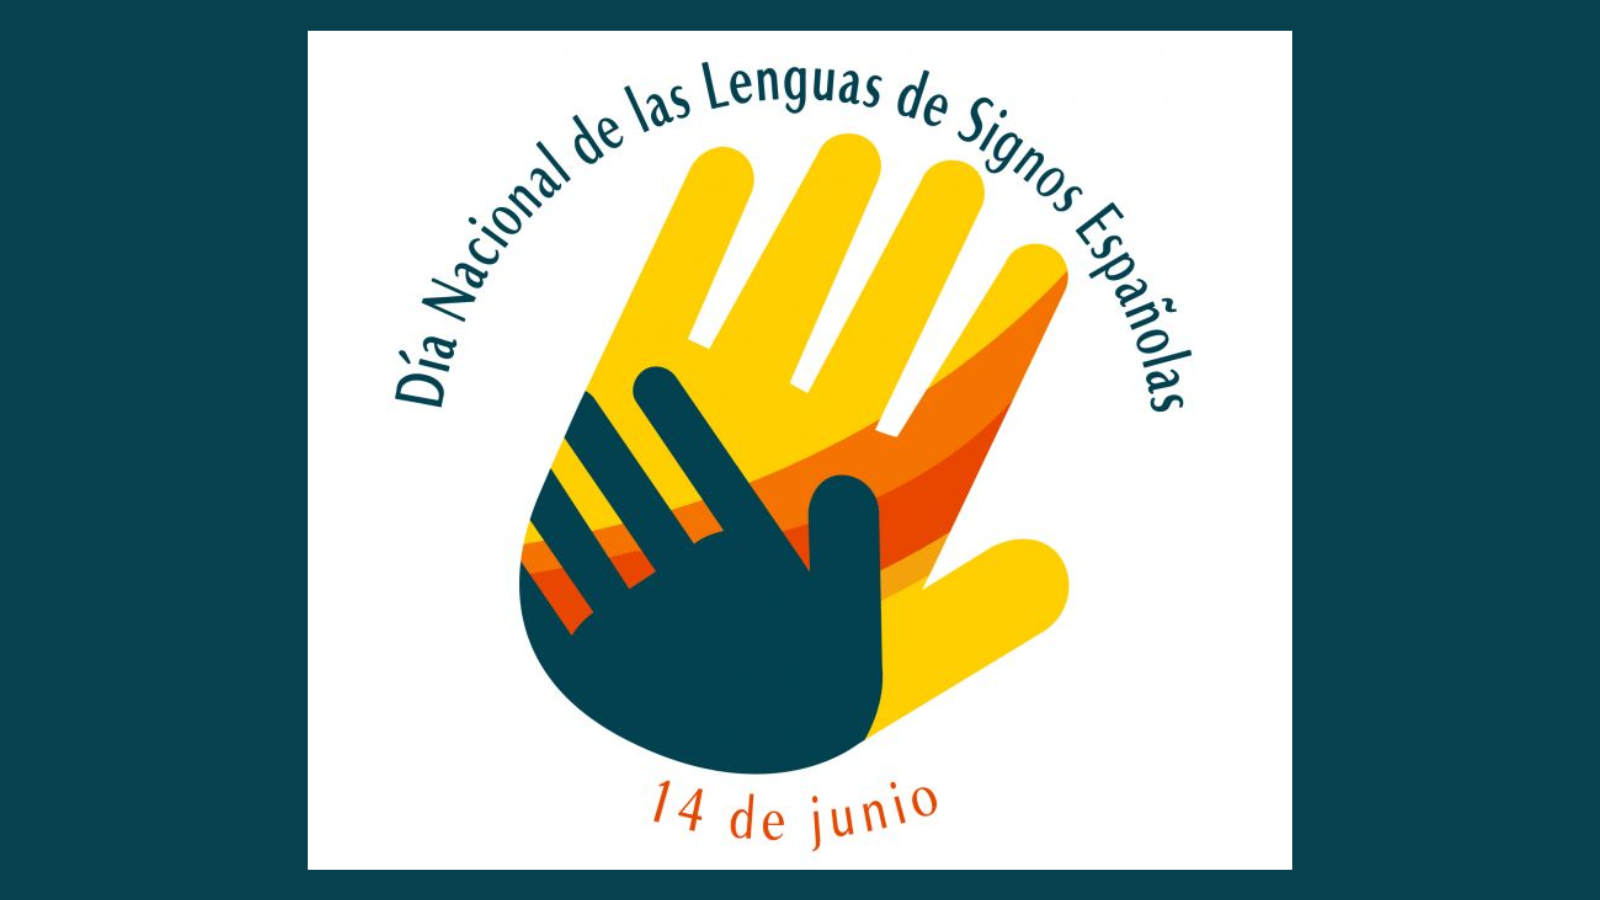 Cartel del Día nacional de las Lenguas de Signos Españolas, que se celebra el 14 de junio